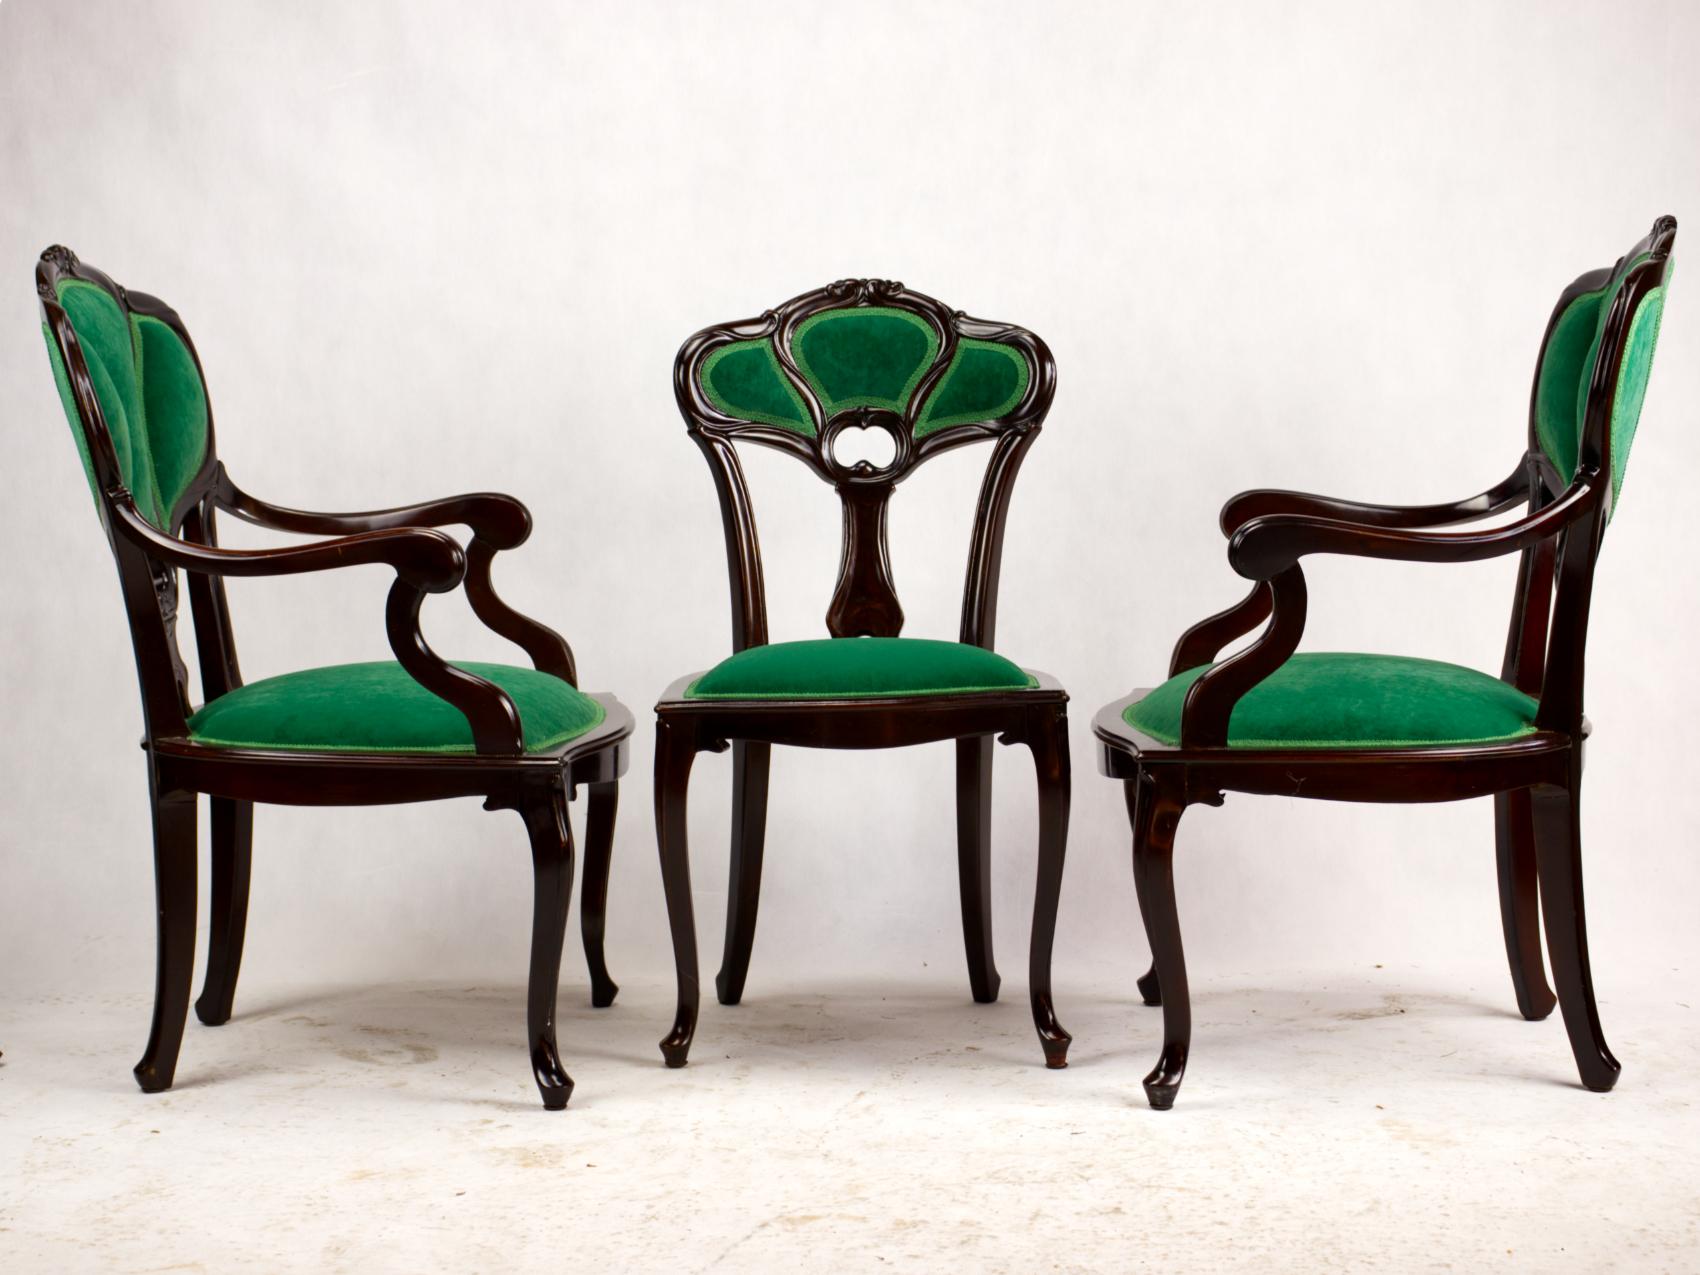 Satz von drei Art Nouveau-Sesseln aus dem frühen 20. Jahrhundert. Schön geschnitztes Stuhlgestell aus Obstholz mit gepolsterten Sitzen und Rückenlehnen in Form von drei Blättern auf Cabriole-Beinen. Die Stühle sind komplett renoviert und mit einer